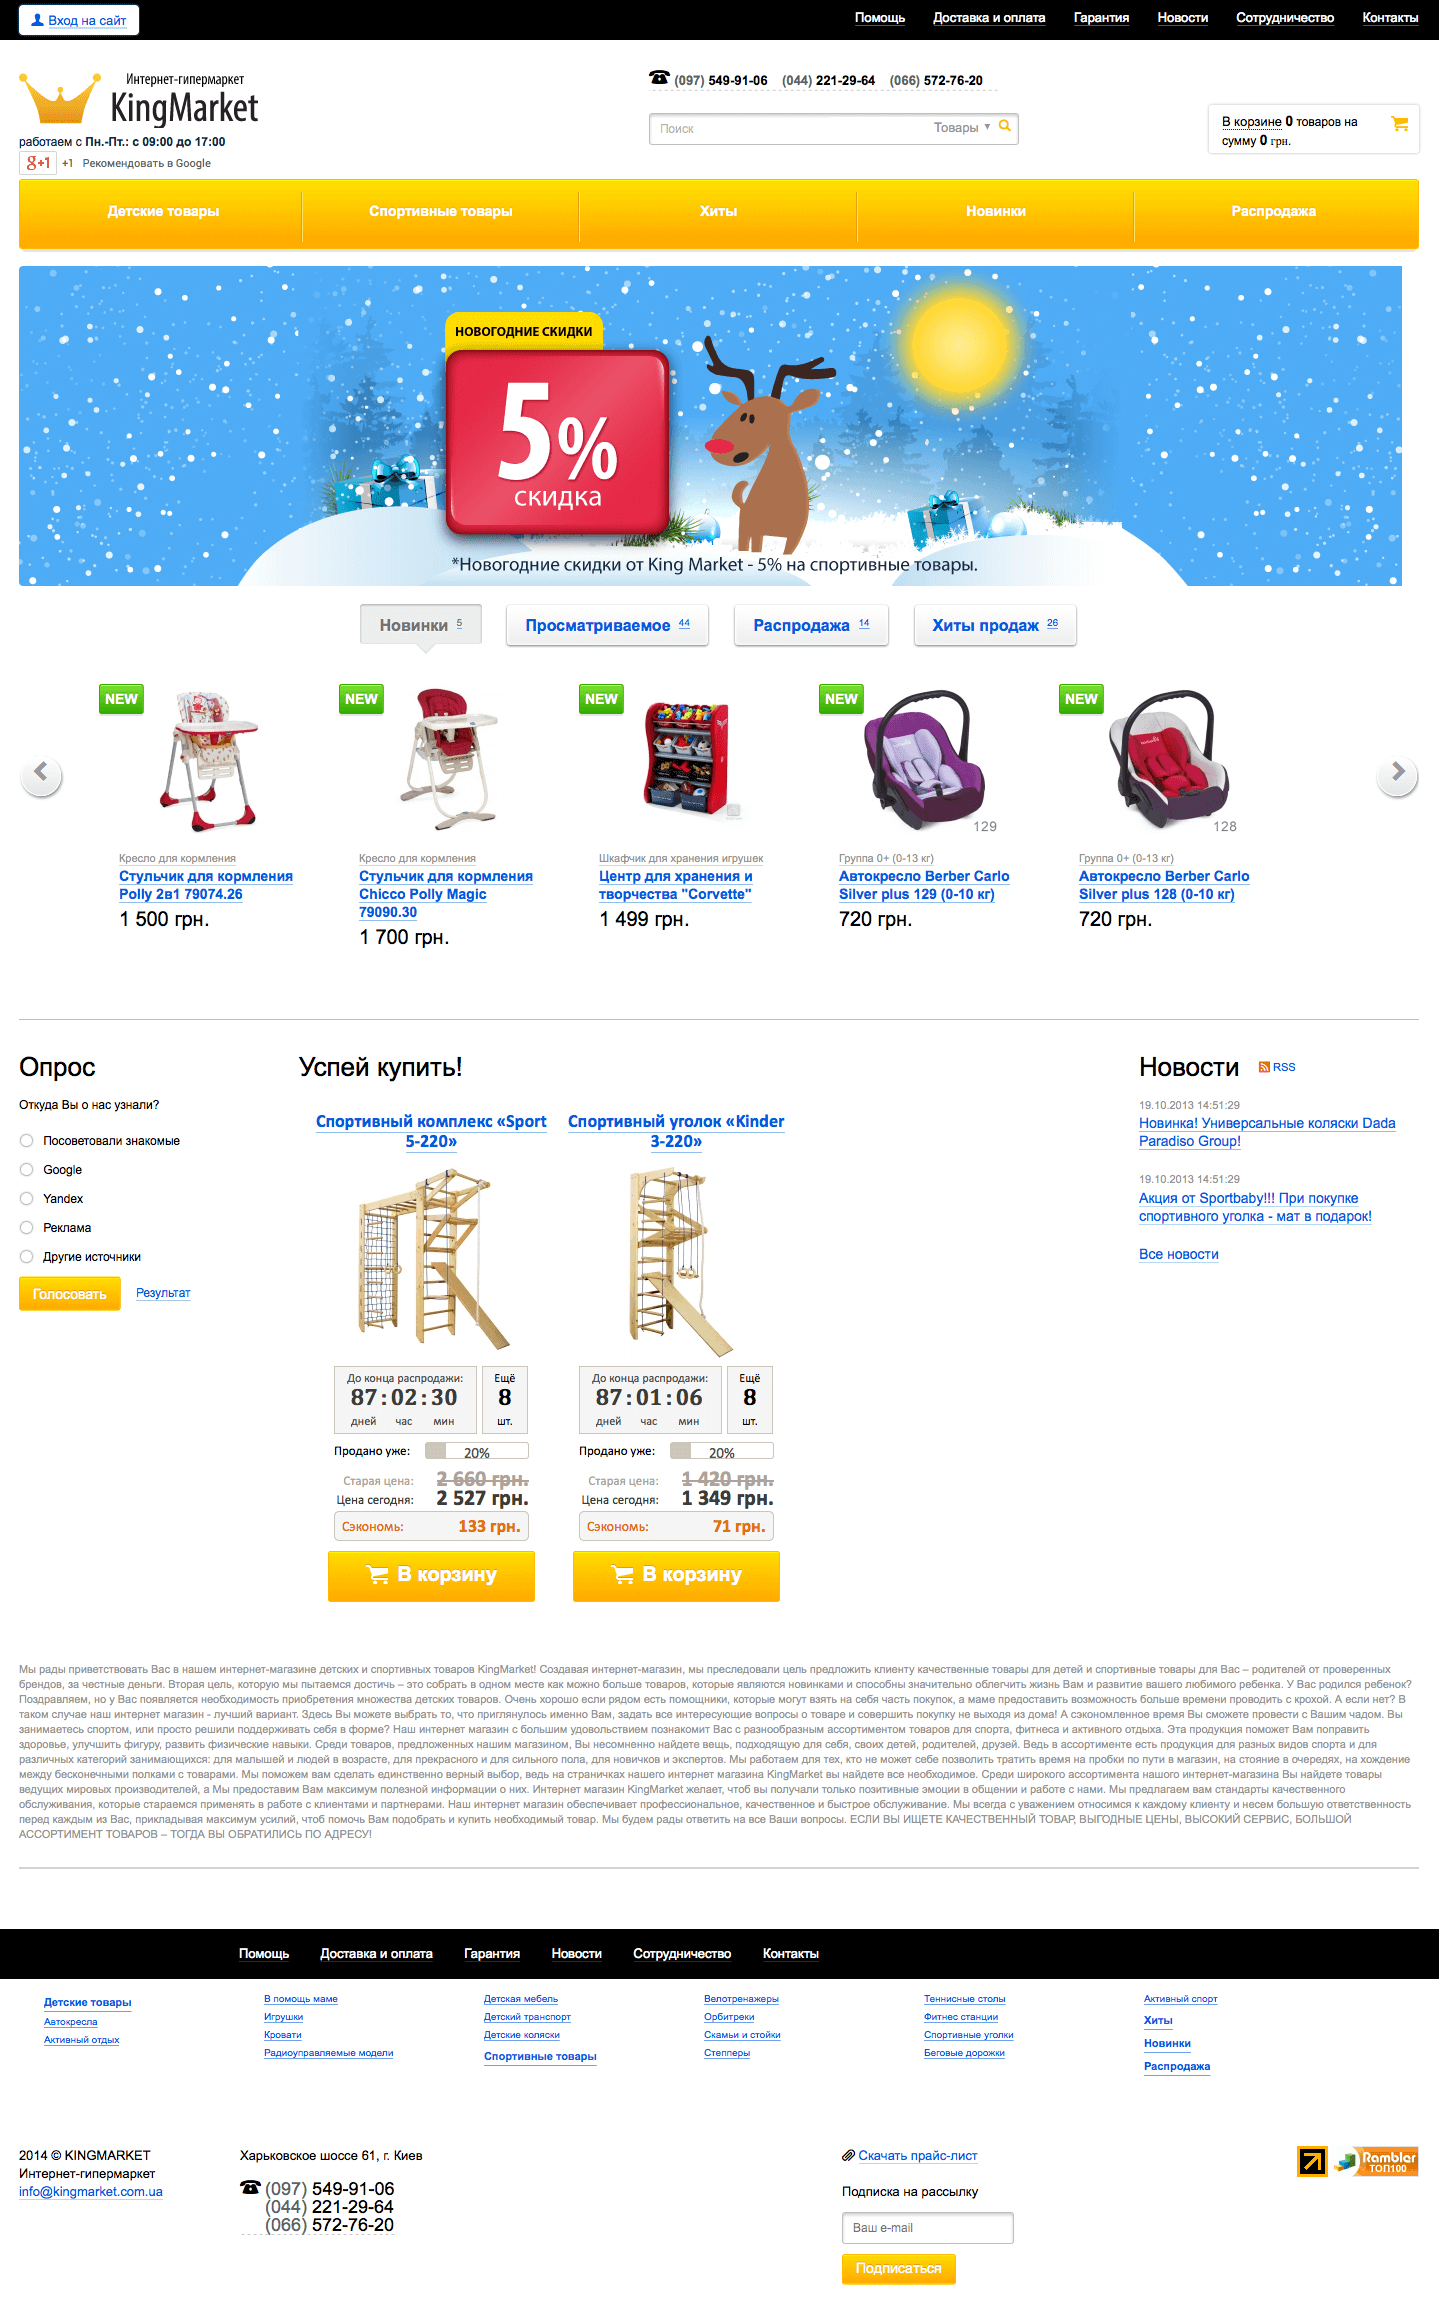 KingMarket - интернет магазин товаров для детей и спорта0